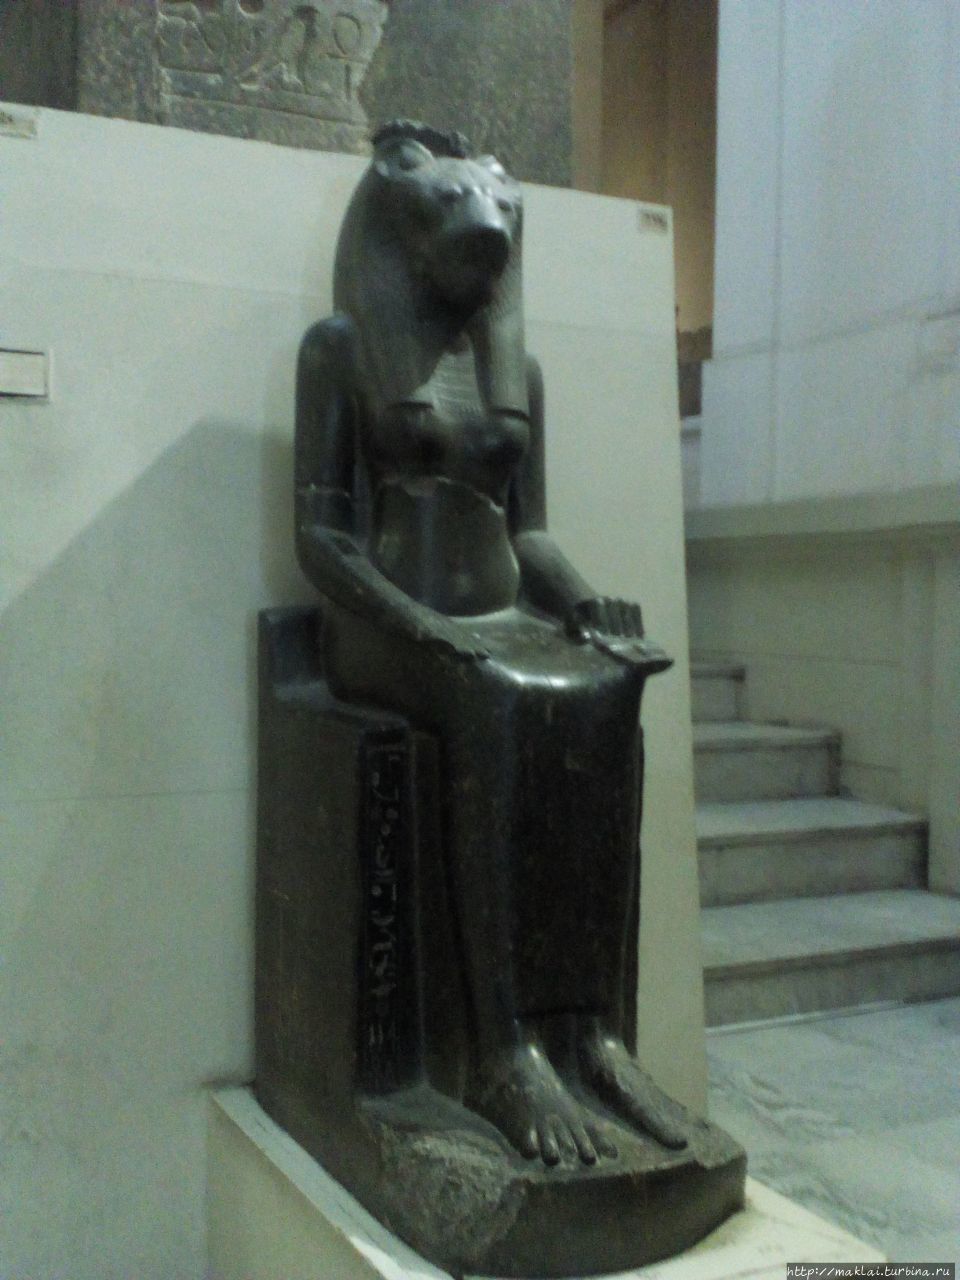 Египетский музей Каир, Египет